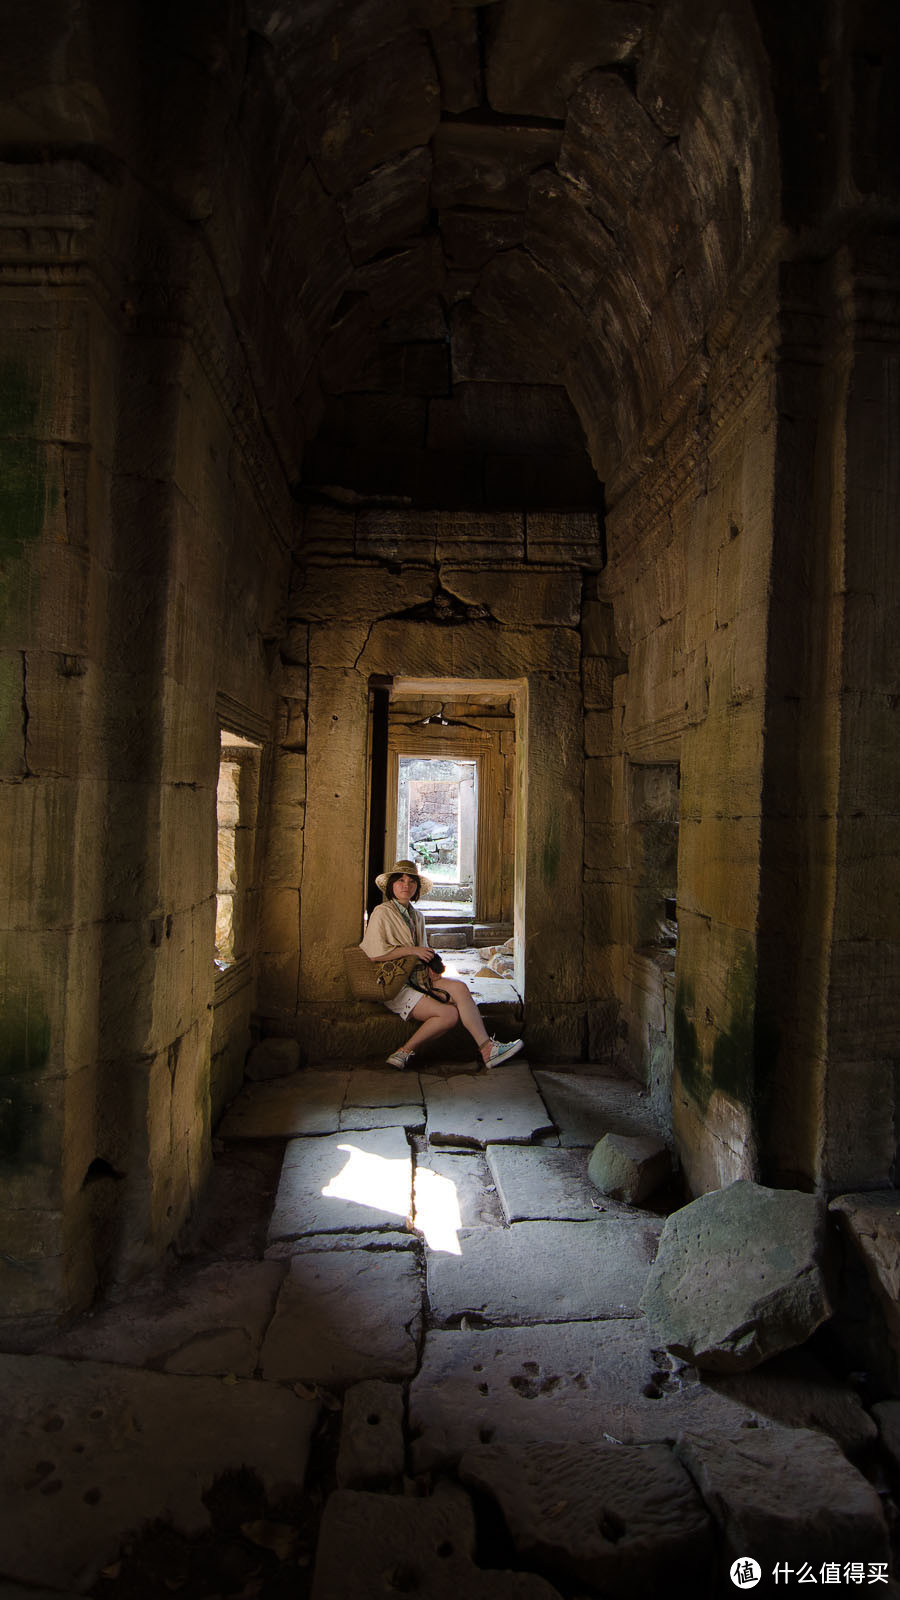 众生相View in Cambodia，说说那里的见闻与照片后面的事情（图多）